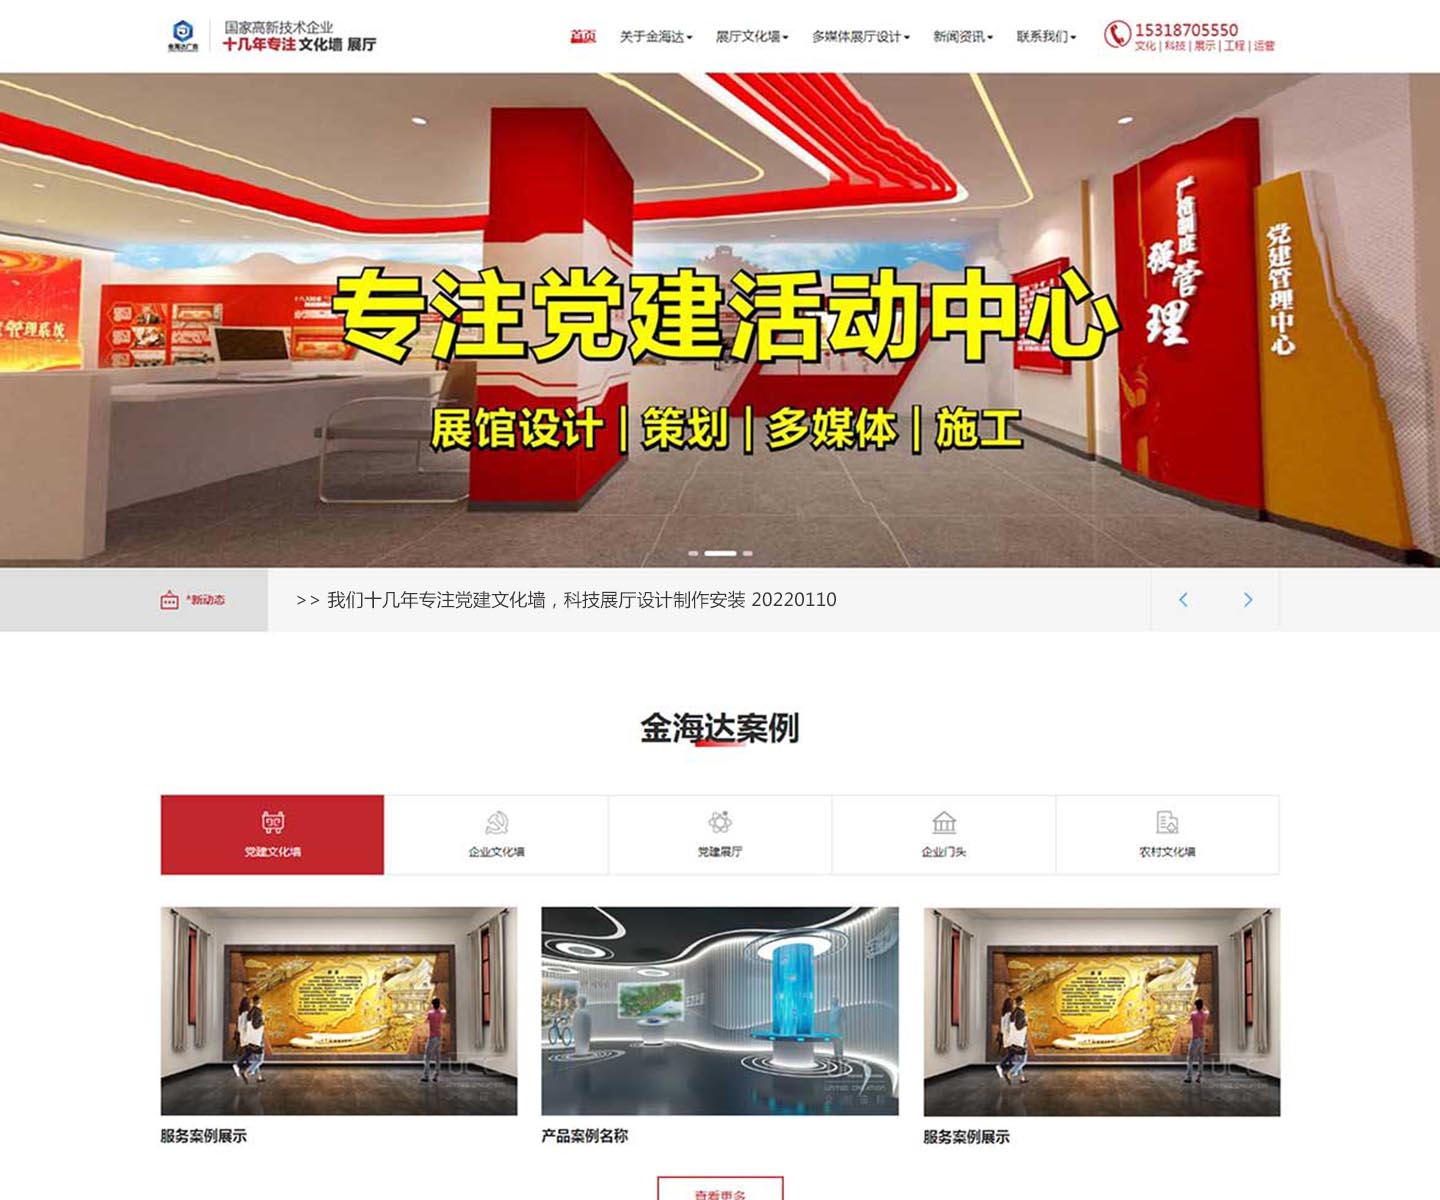 金海达广告公司-中文版官方网站